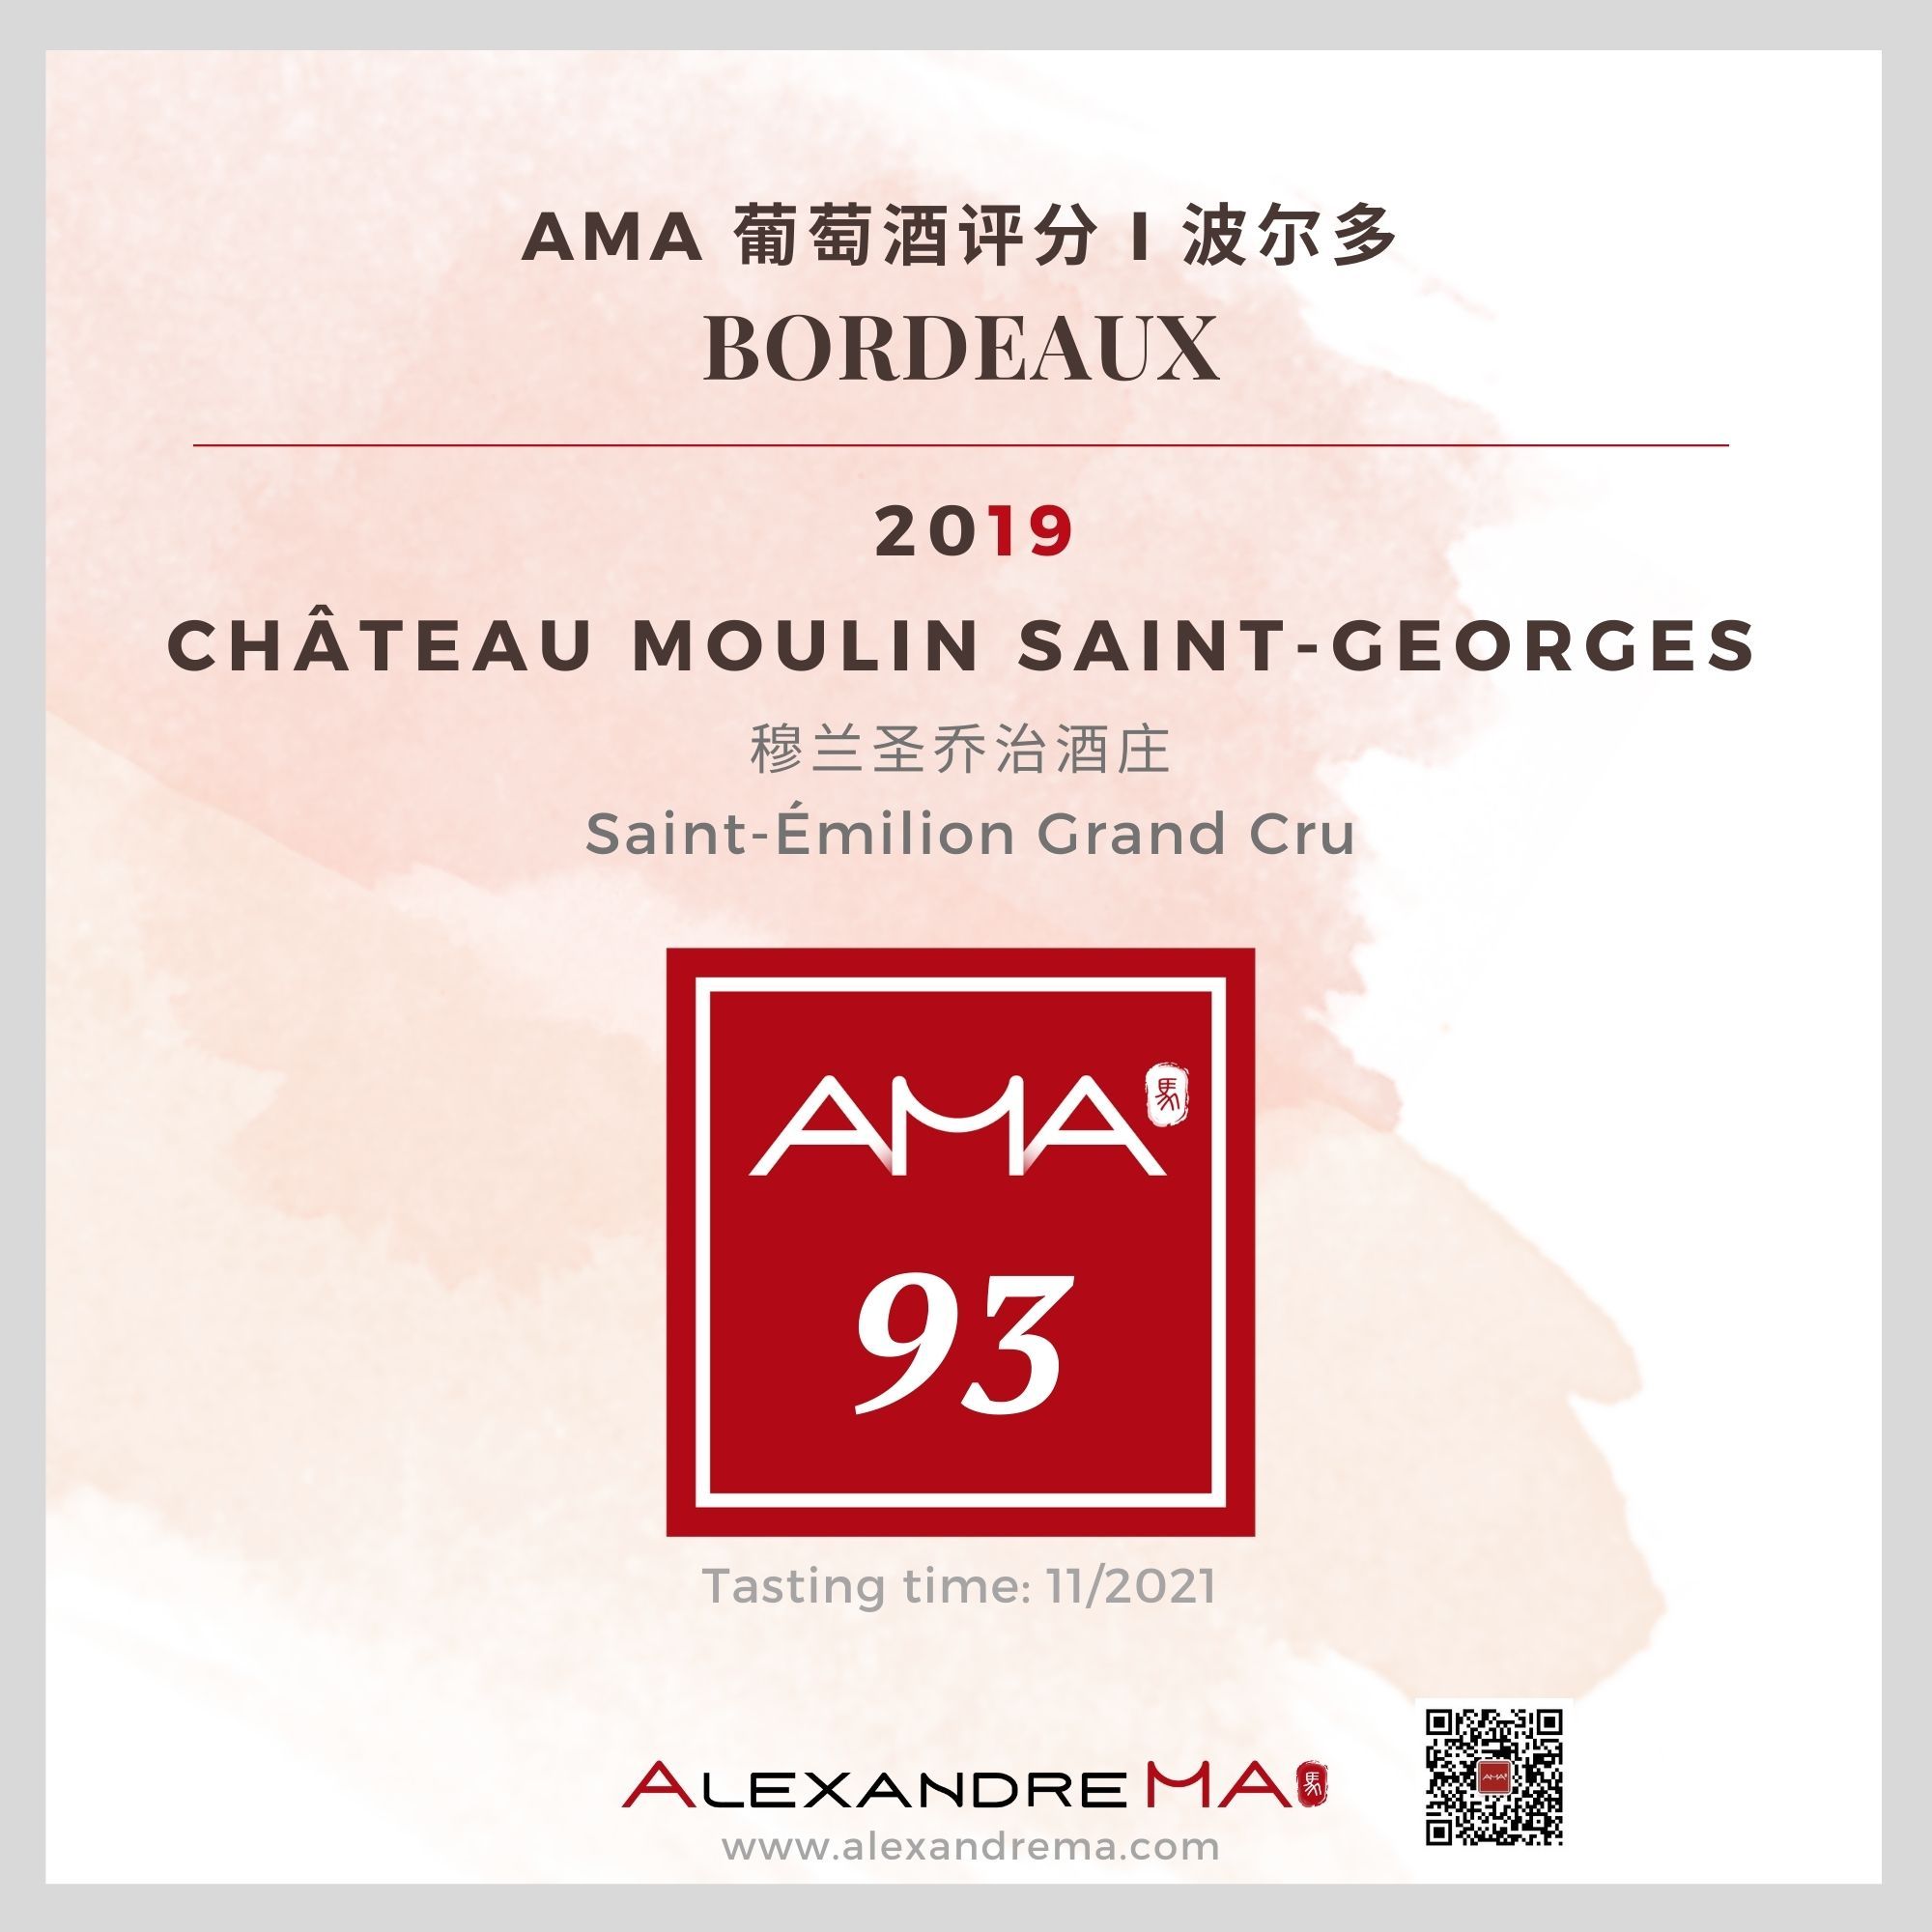 Château Moulin Saint-Georges 2019 穆兰圣乔治酒庄 - Alexandre Ma